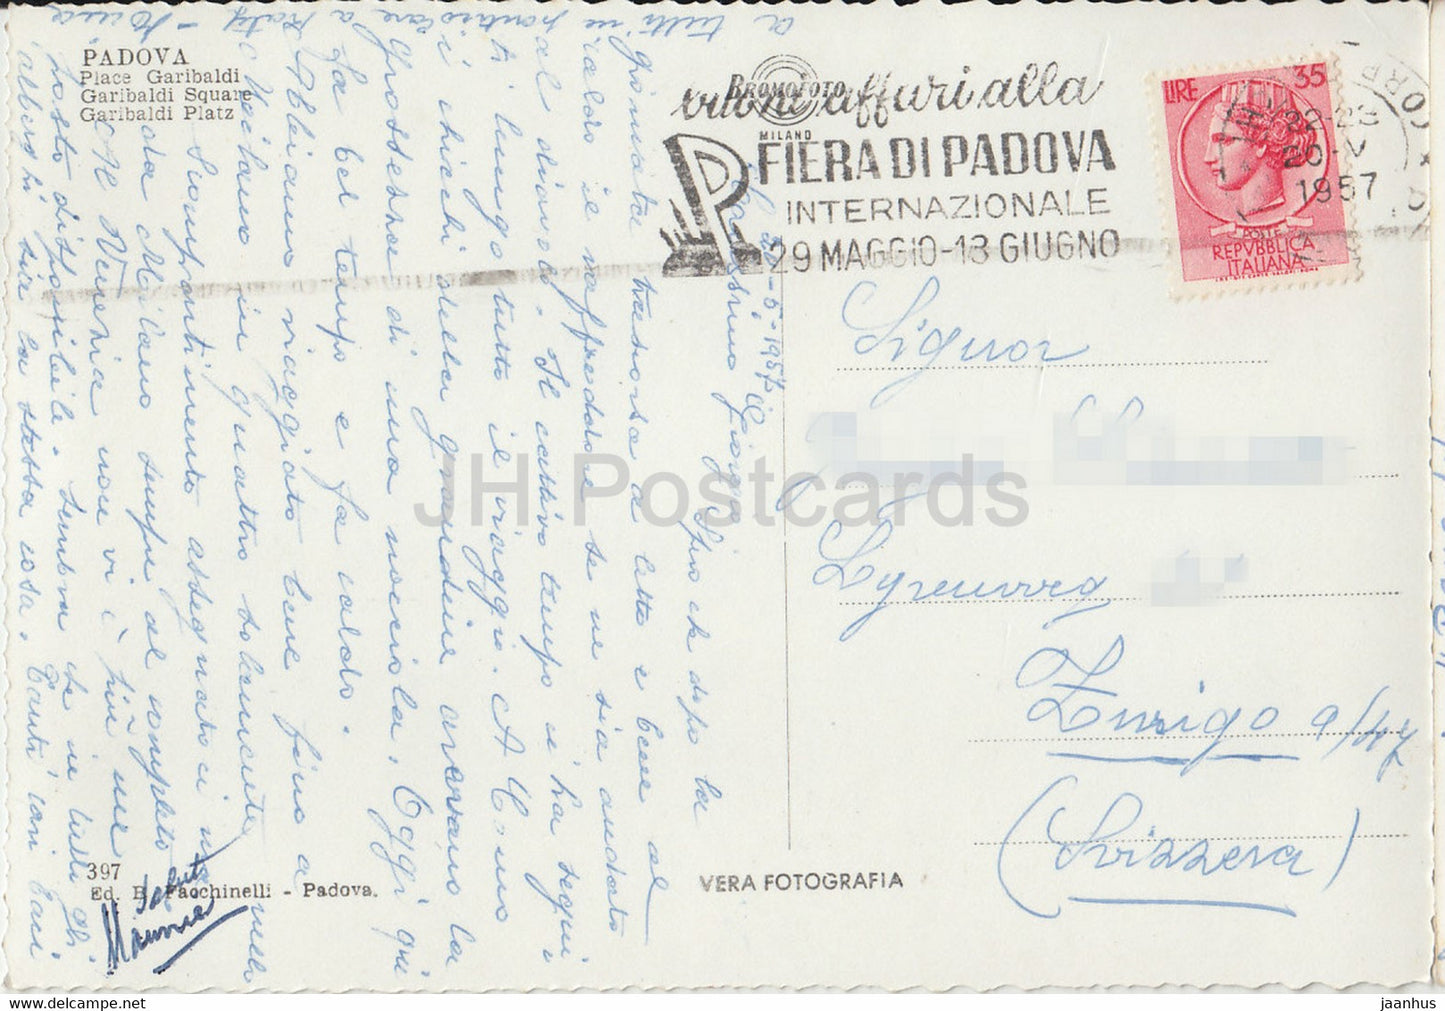 Padoue - Piazza Garibaldi - voiture - trolleybus - place - carte postale ancienne - 1957 - Italie - utilisé